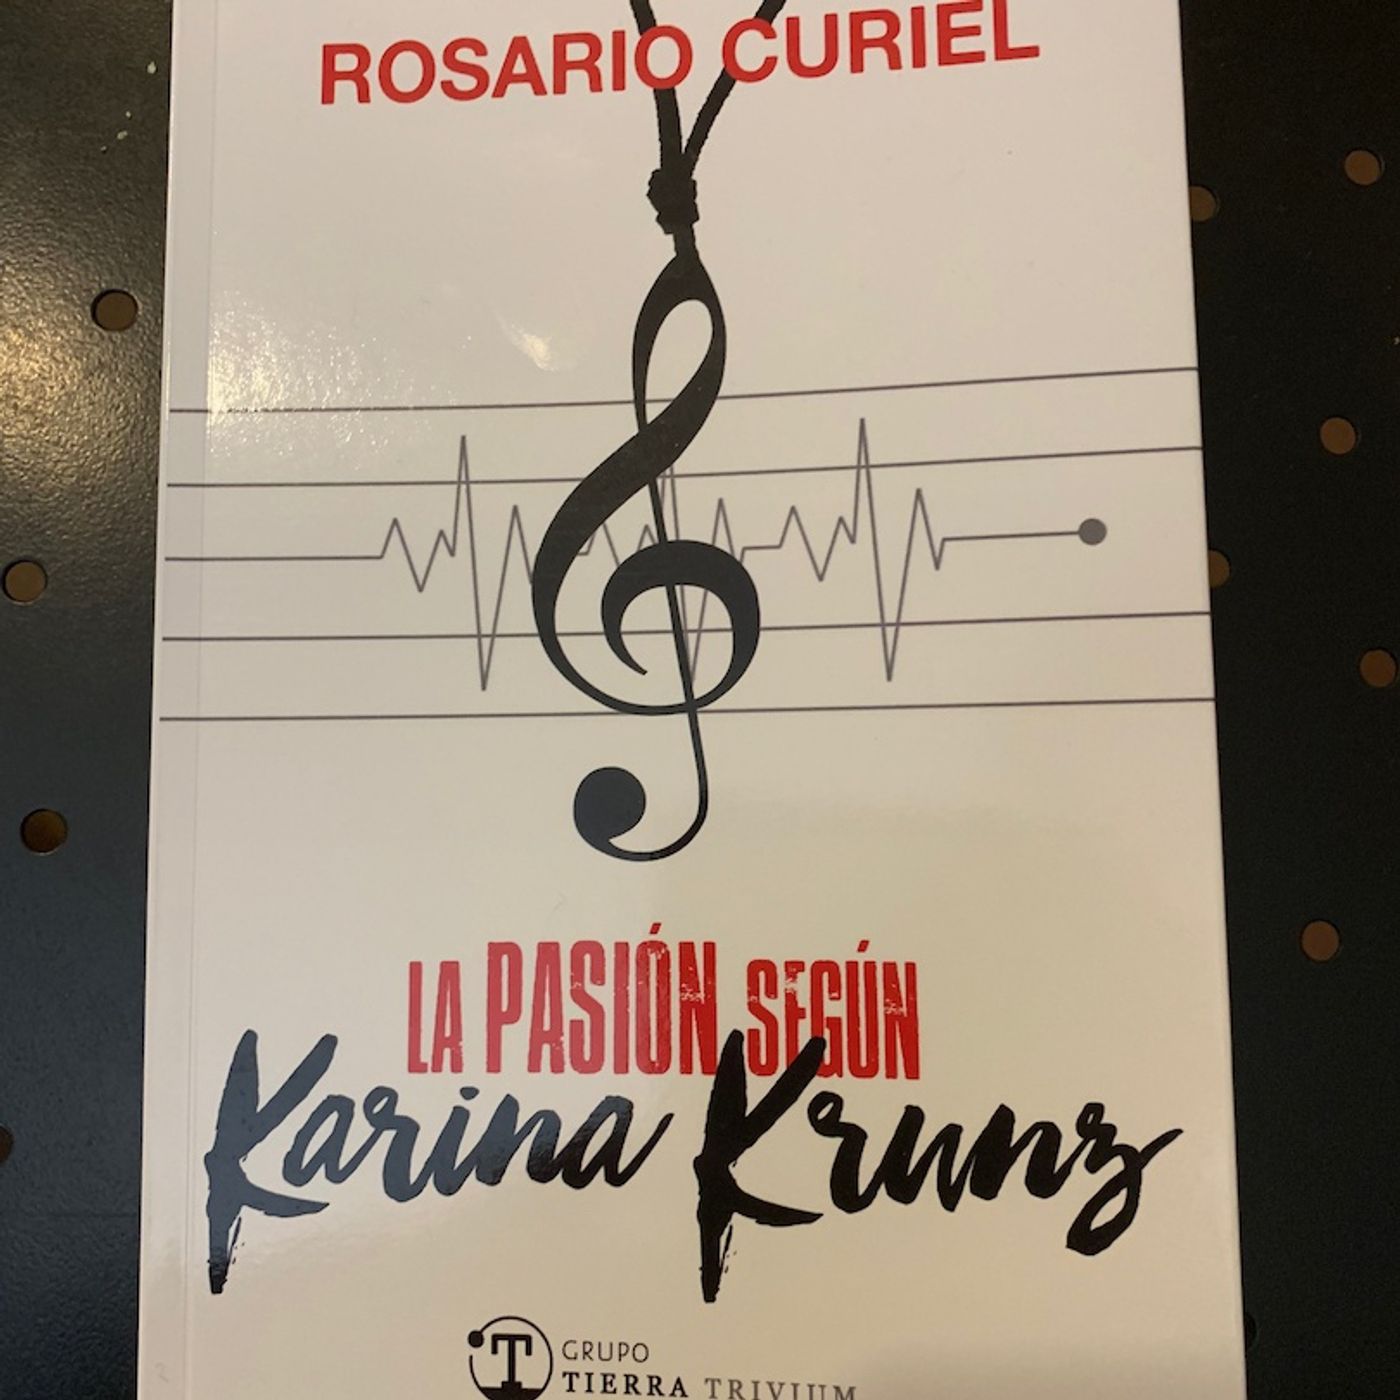 006 - "La Pasión según Karina Krunz" con Rosario Curiel y María, de Terra Trivium Editorial.